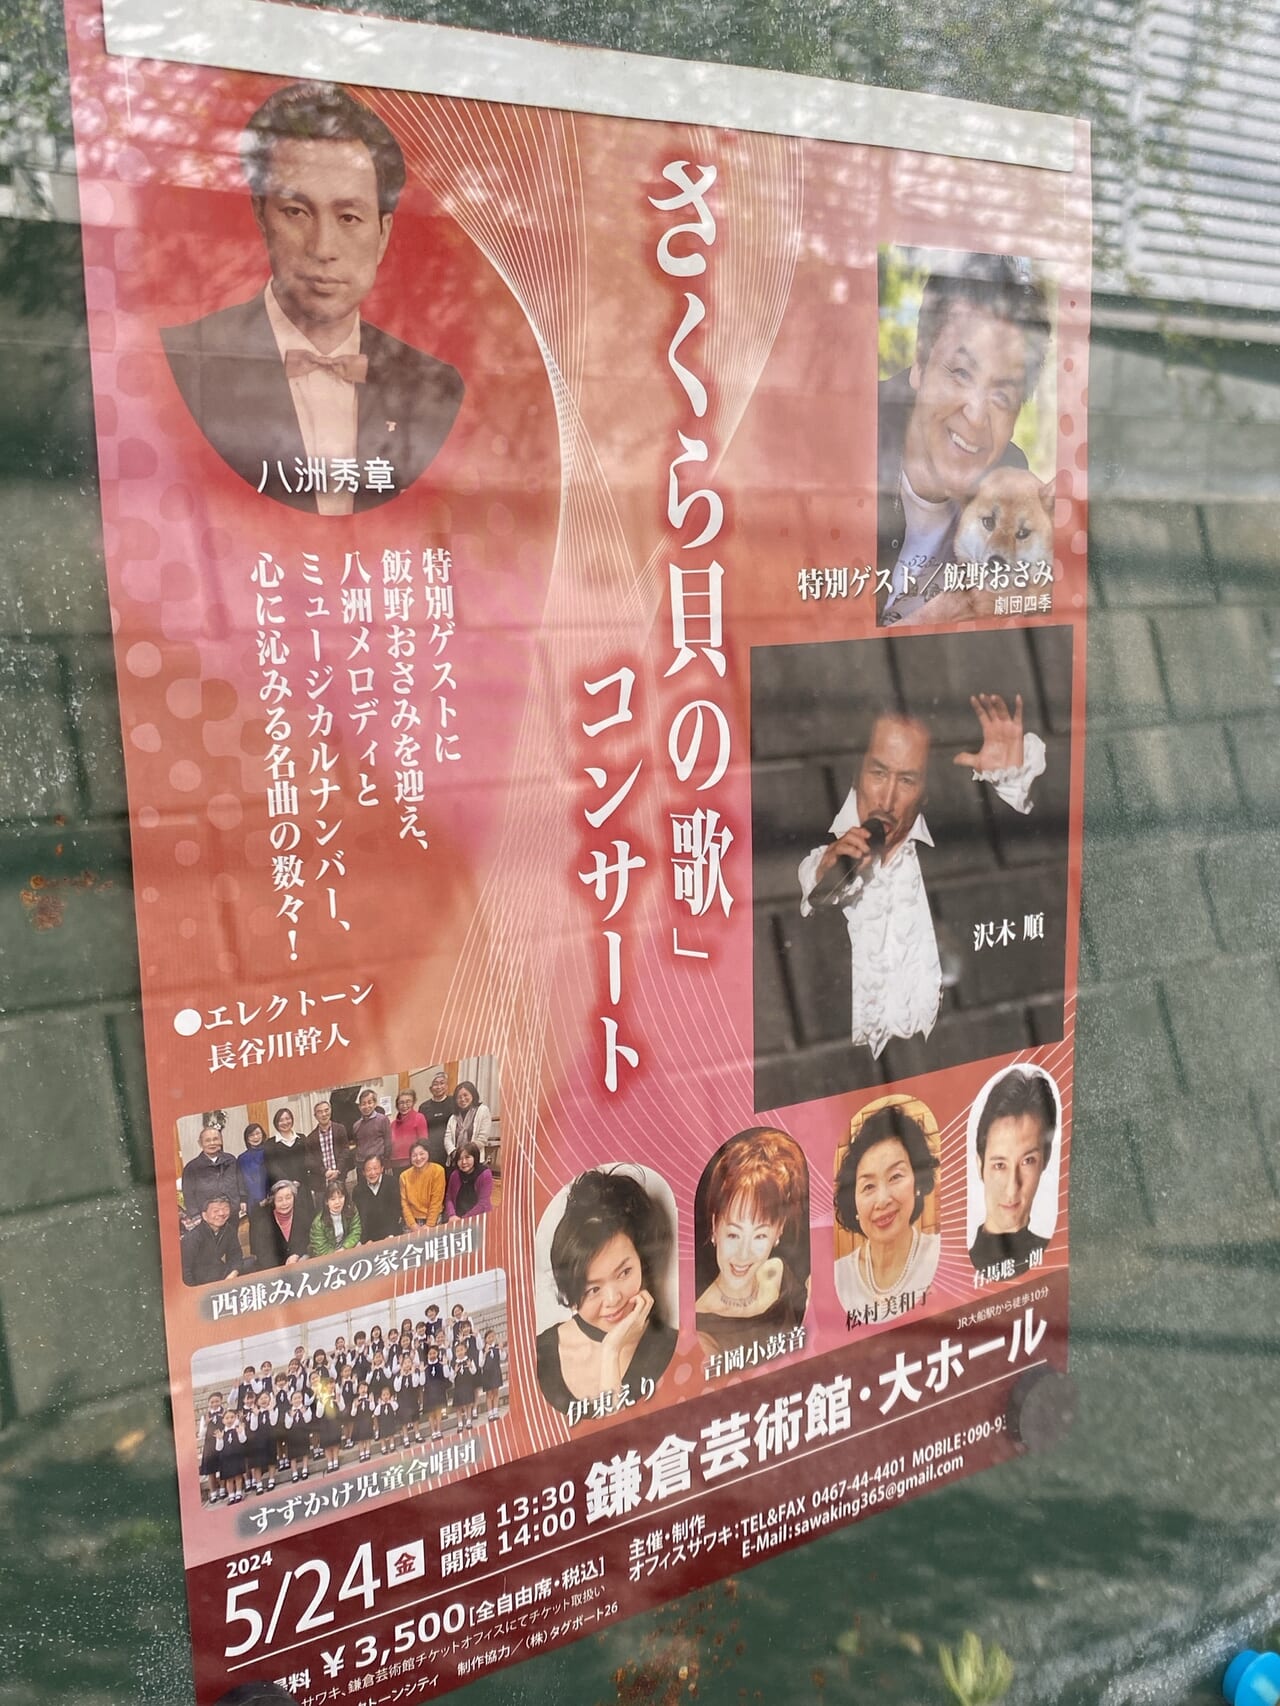 鎌倉さくら貝の歌コンサート